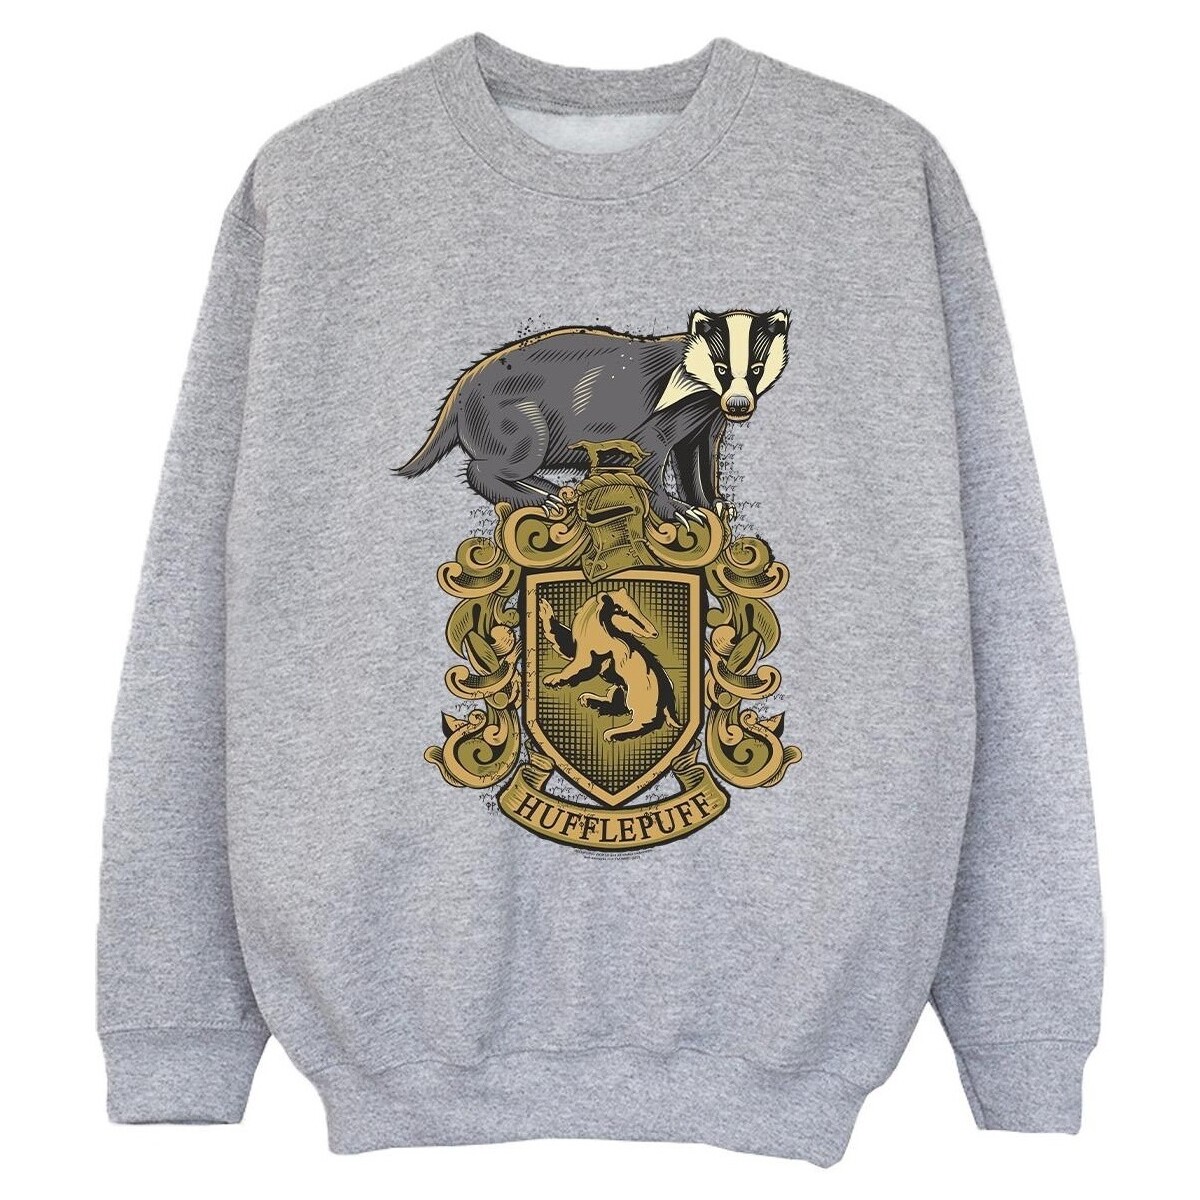 Vêtements Garçon Sweats Harry Potter Hufflepuff Sketch Crest Gris